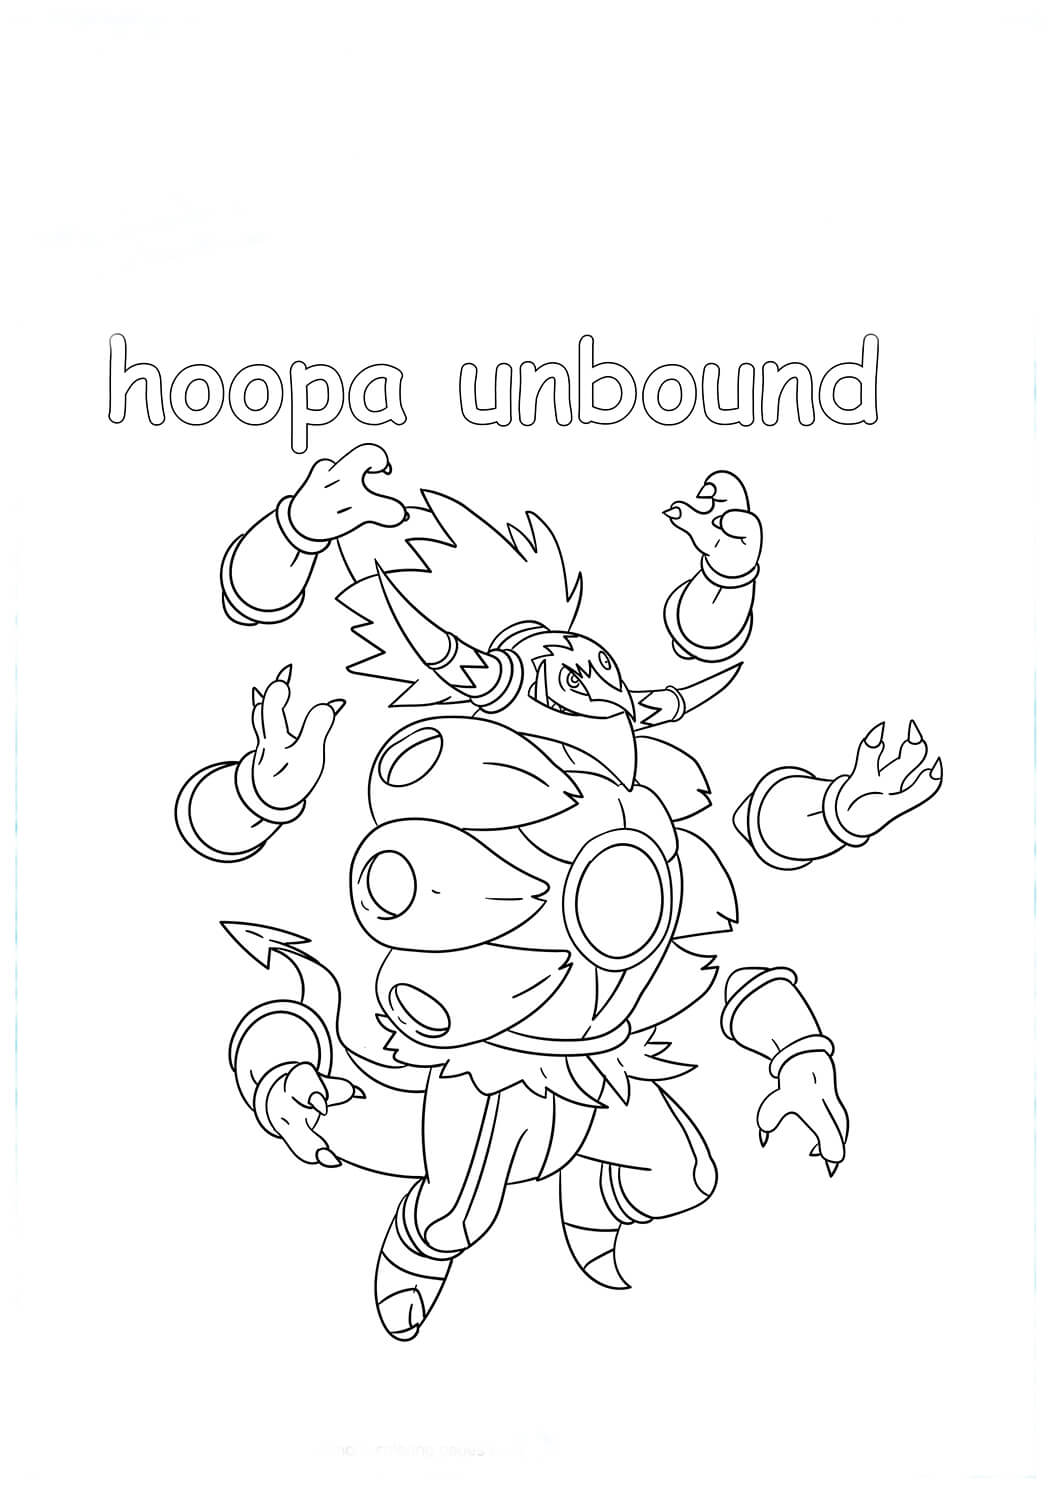 Målarbild Unbound Hoopa